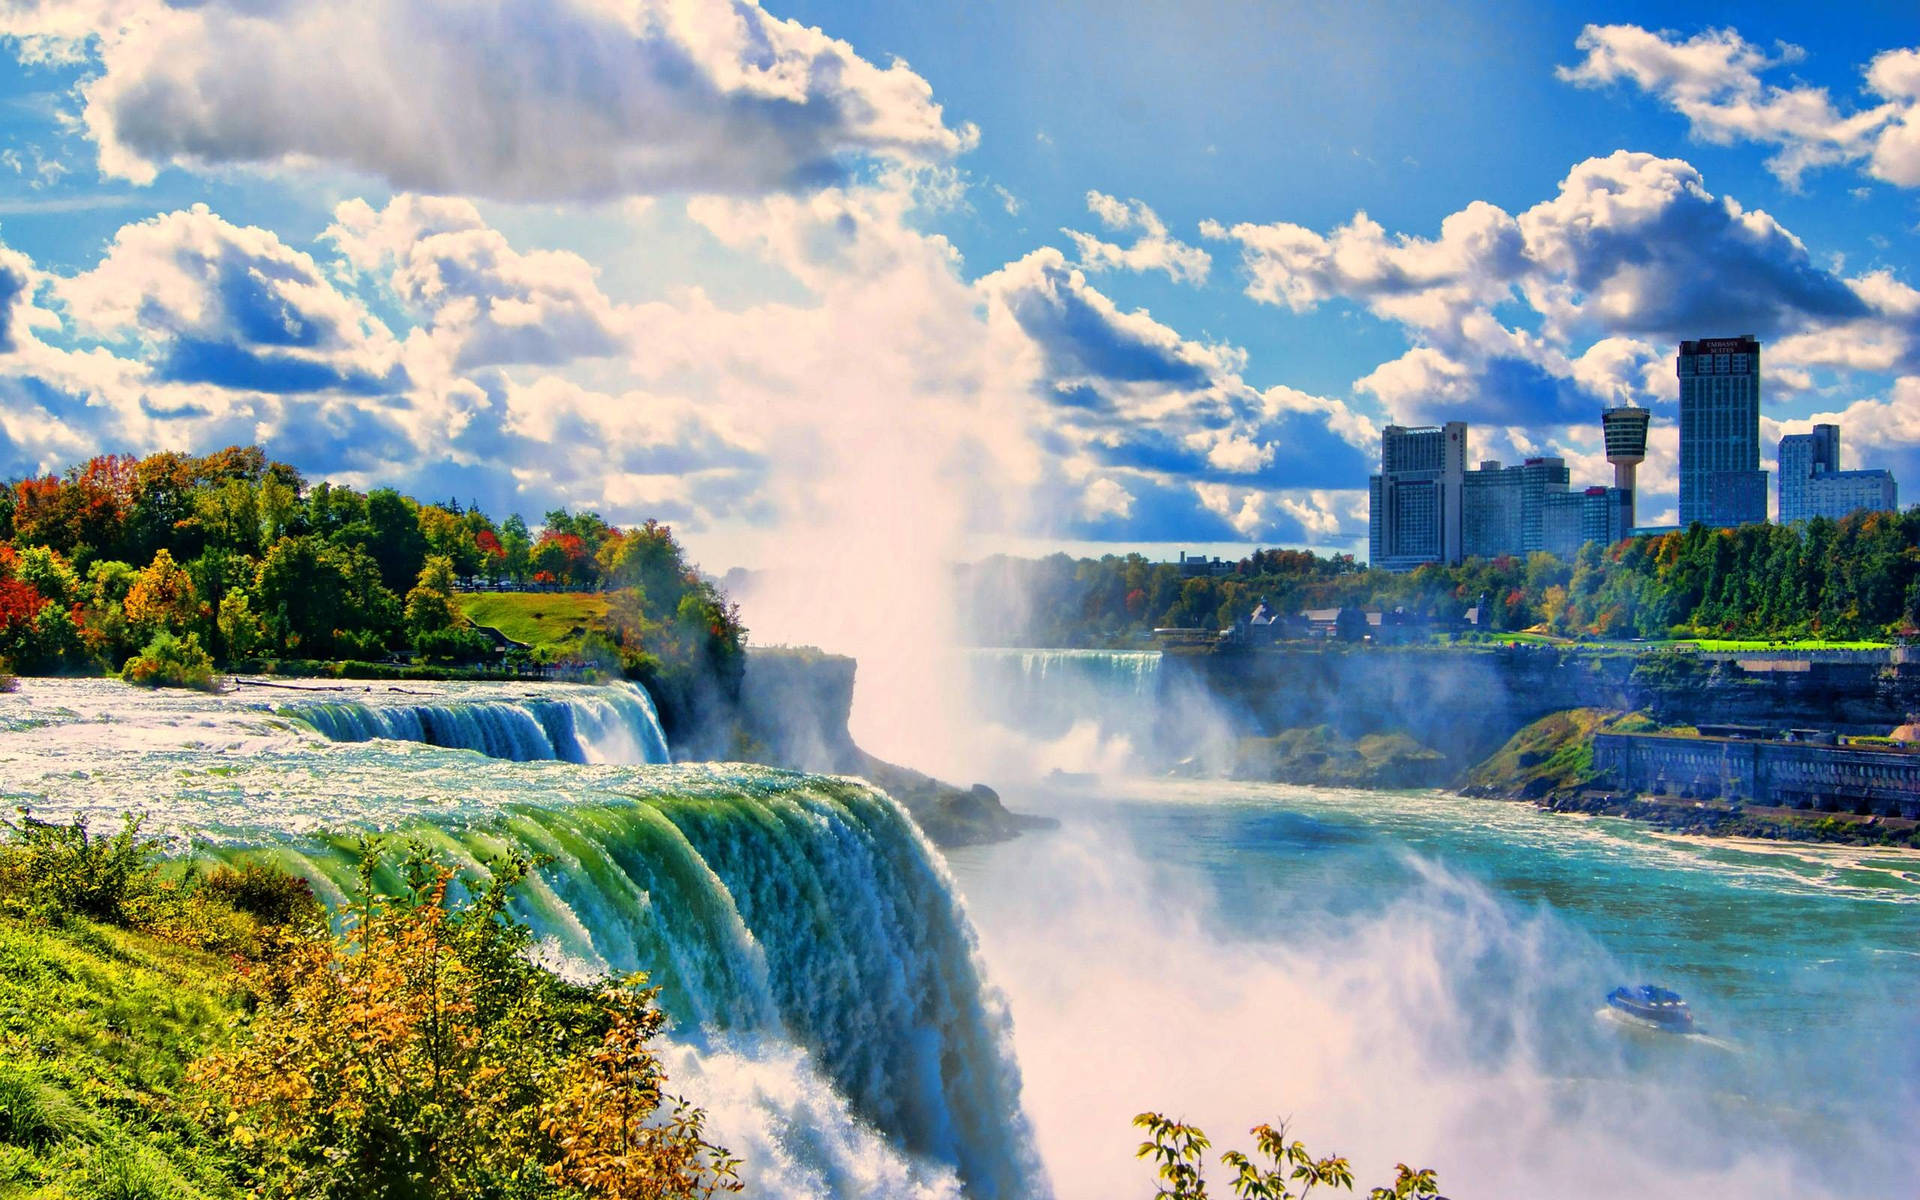 Niagara Falls Photos Download The BEST Free Niagara Falls Stock Photos  HD  Images